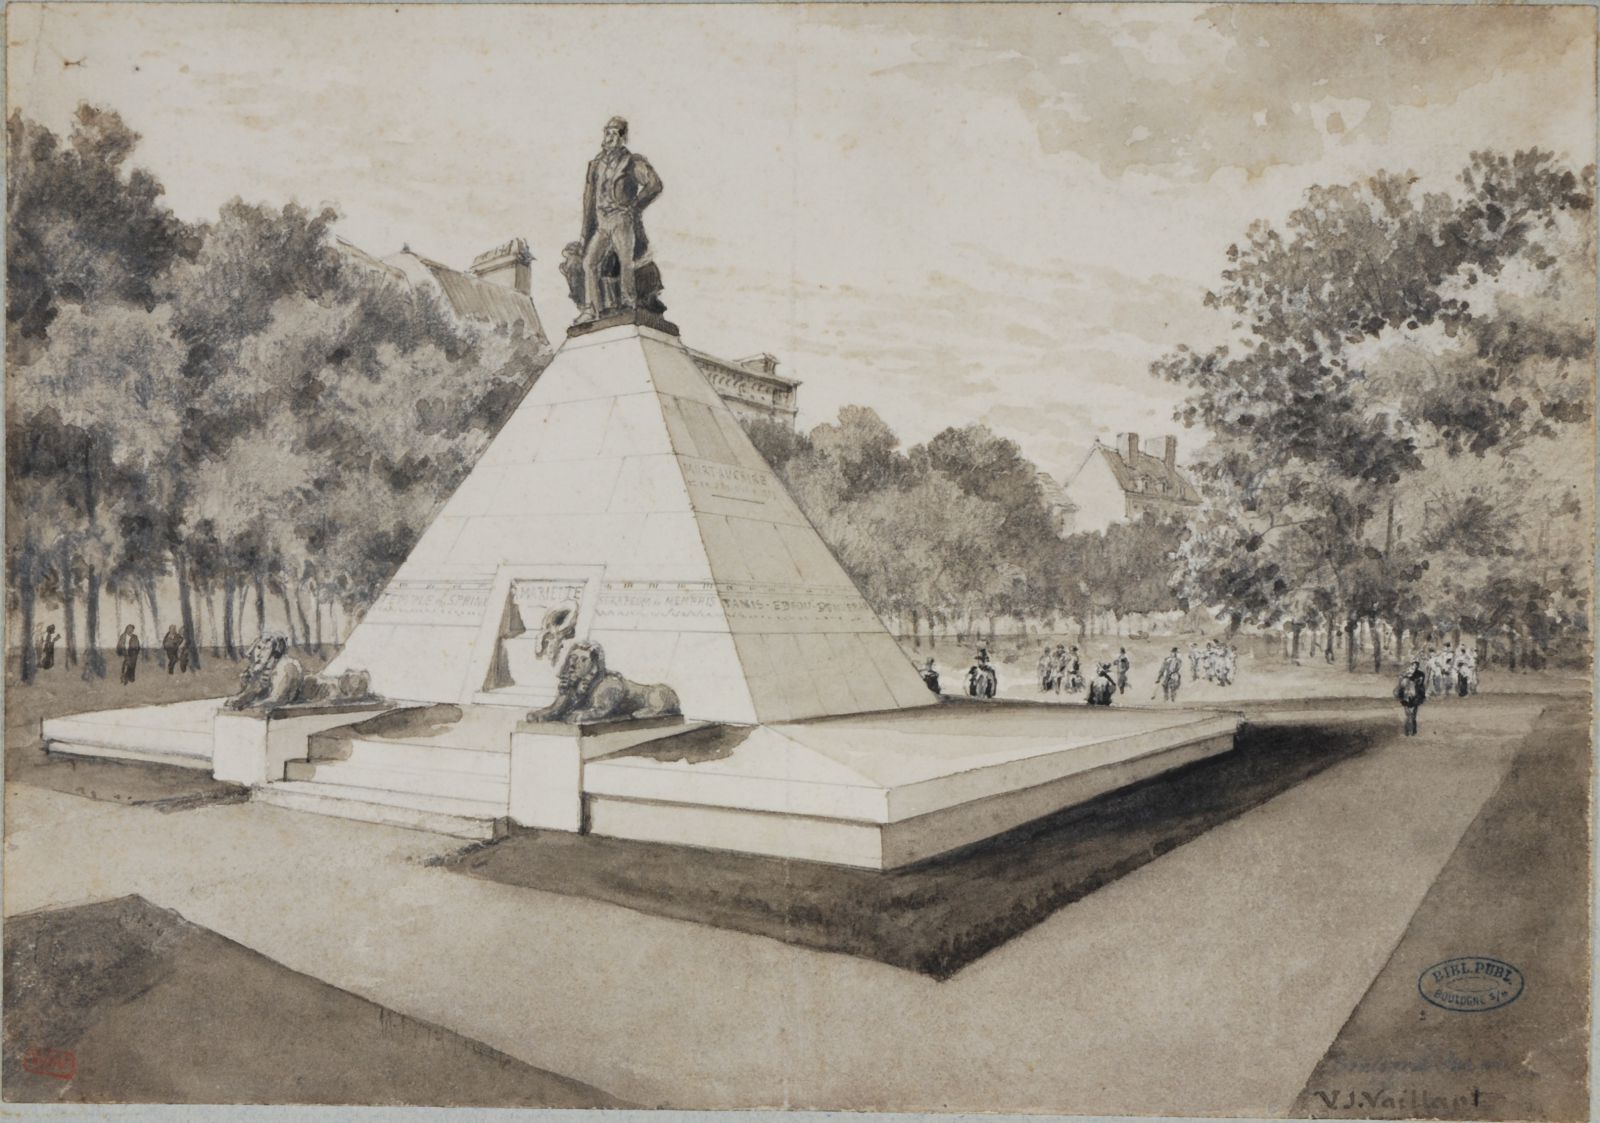 Vue du momnument Mariette dessiné par V-J. Vailalnt à la fin du 19e siècle